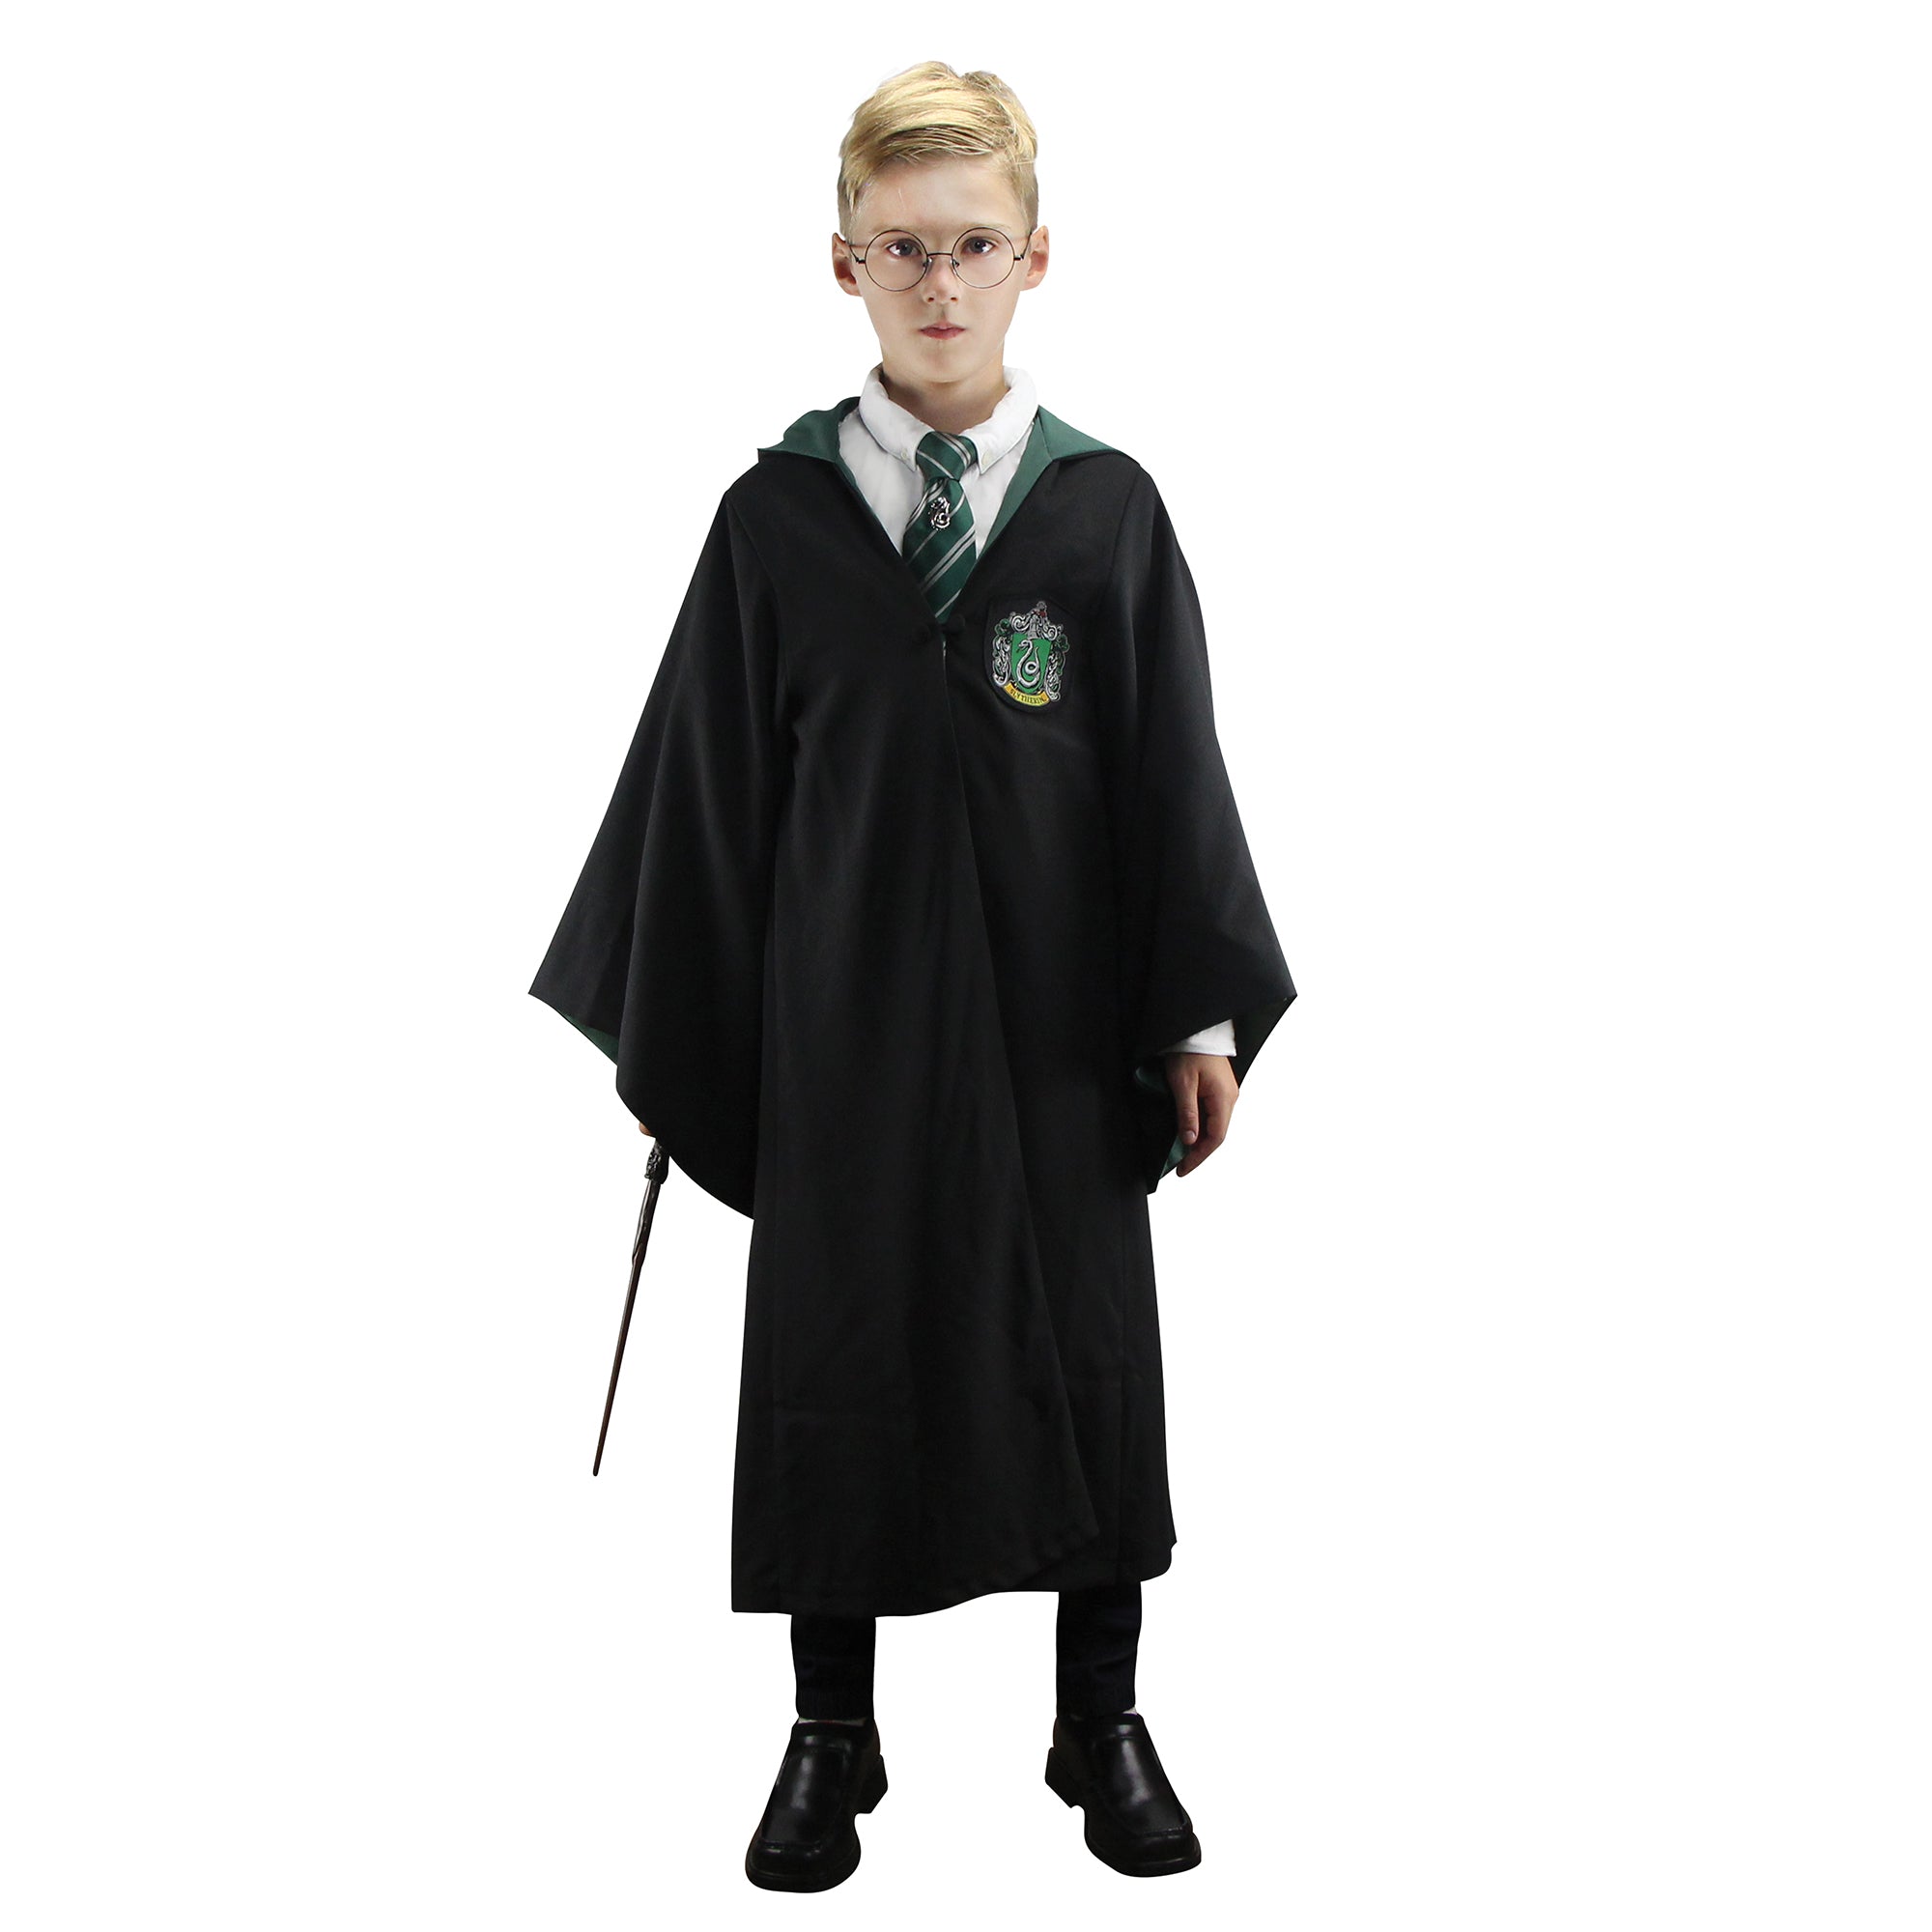 Slytherin Robe For Kids & Tweens - Warner Bros Harry Potter